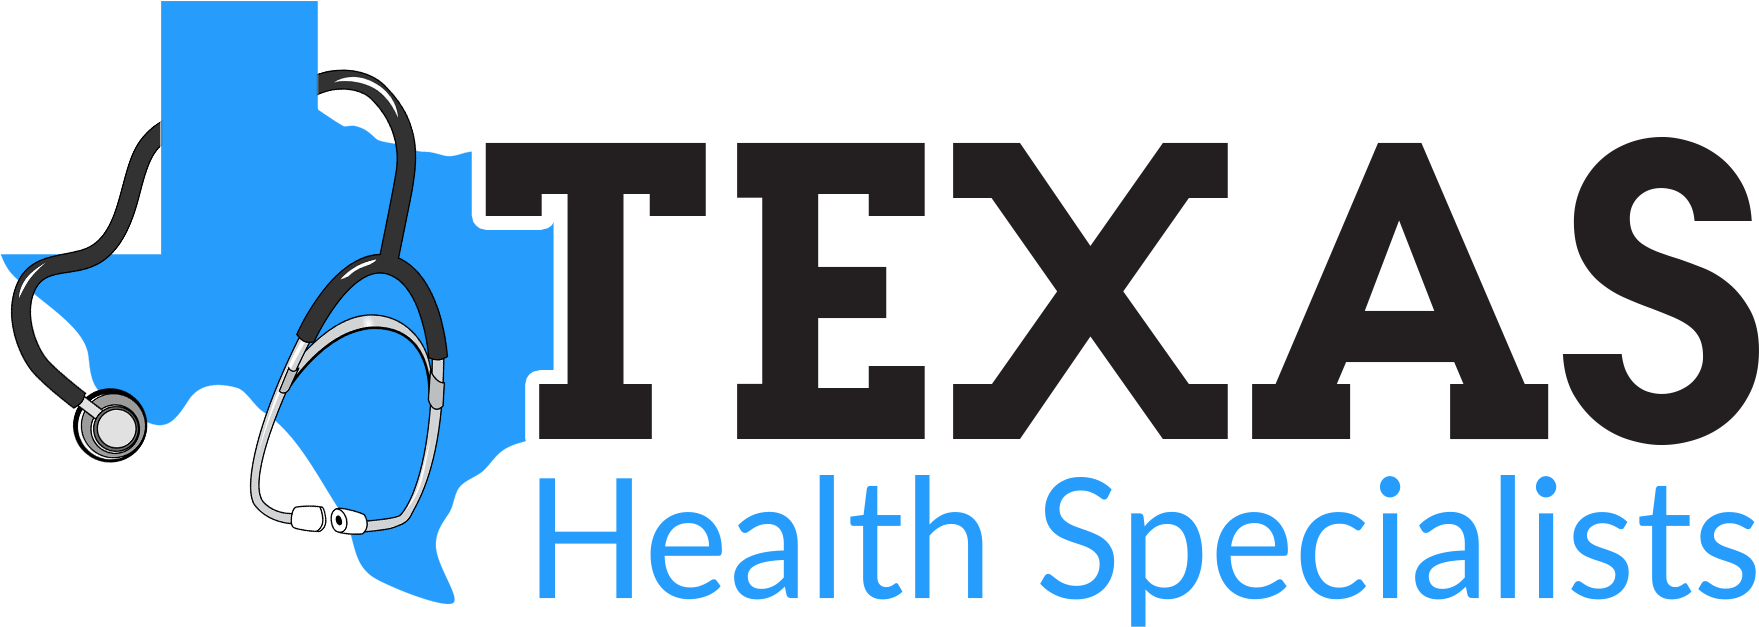 Texas Health Specialists - Maxwell Health (1833x708)